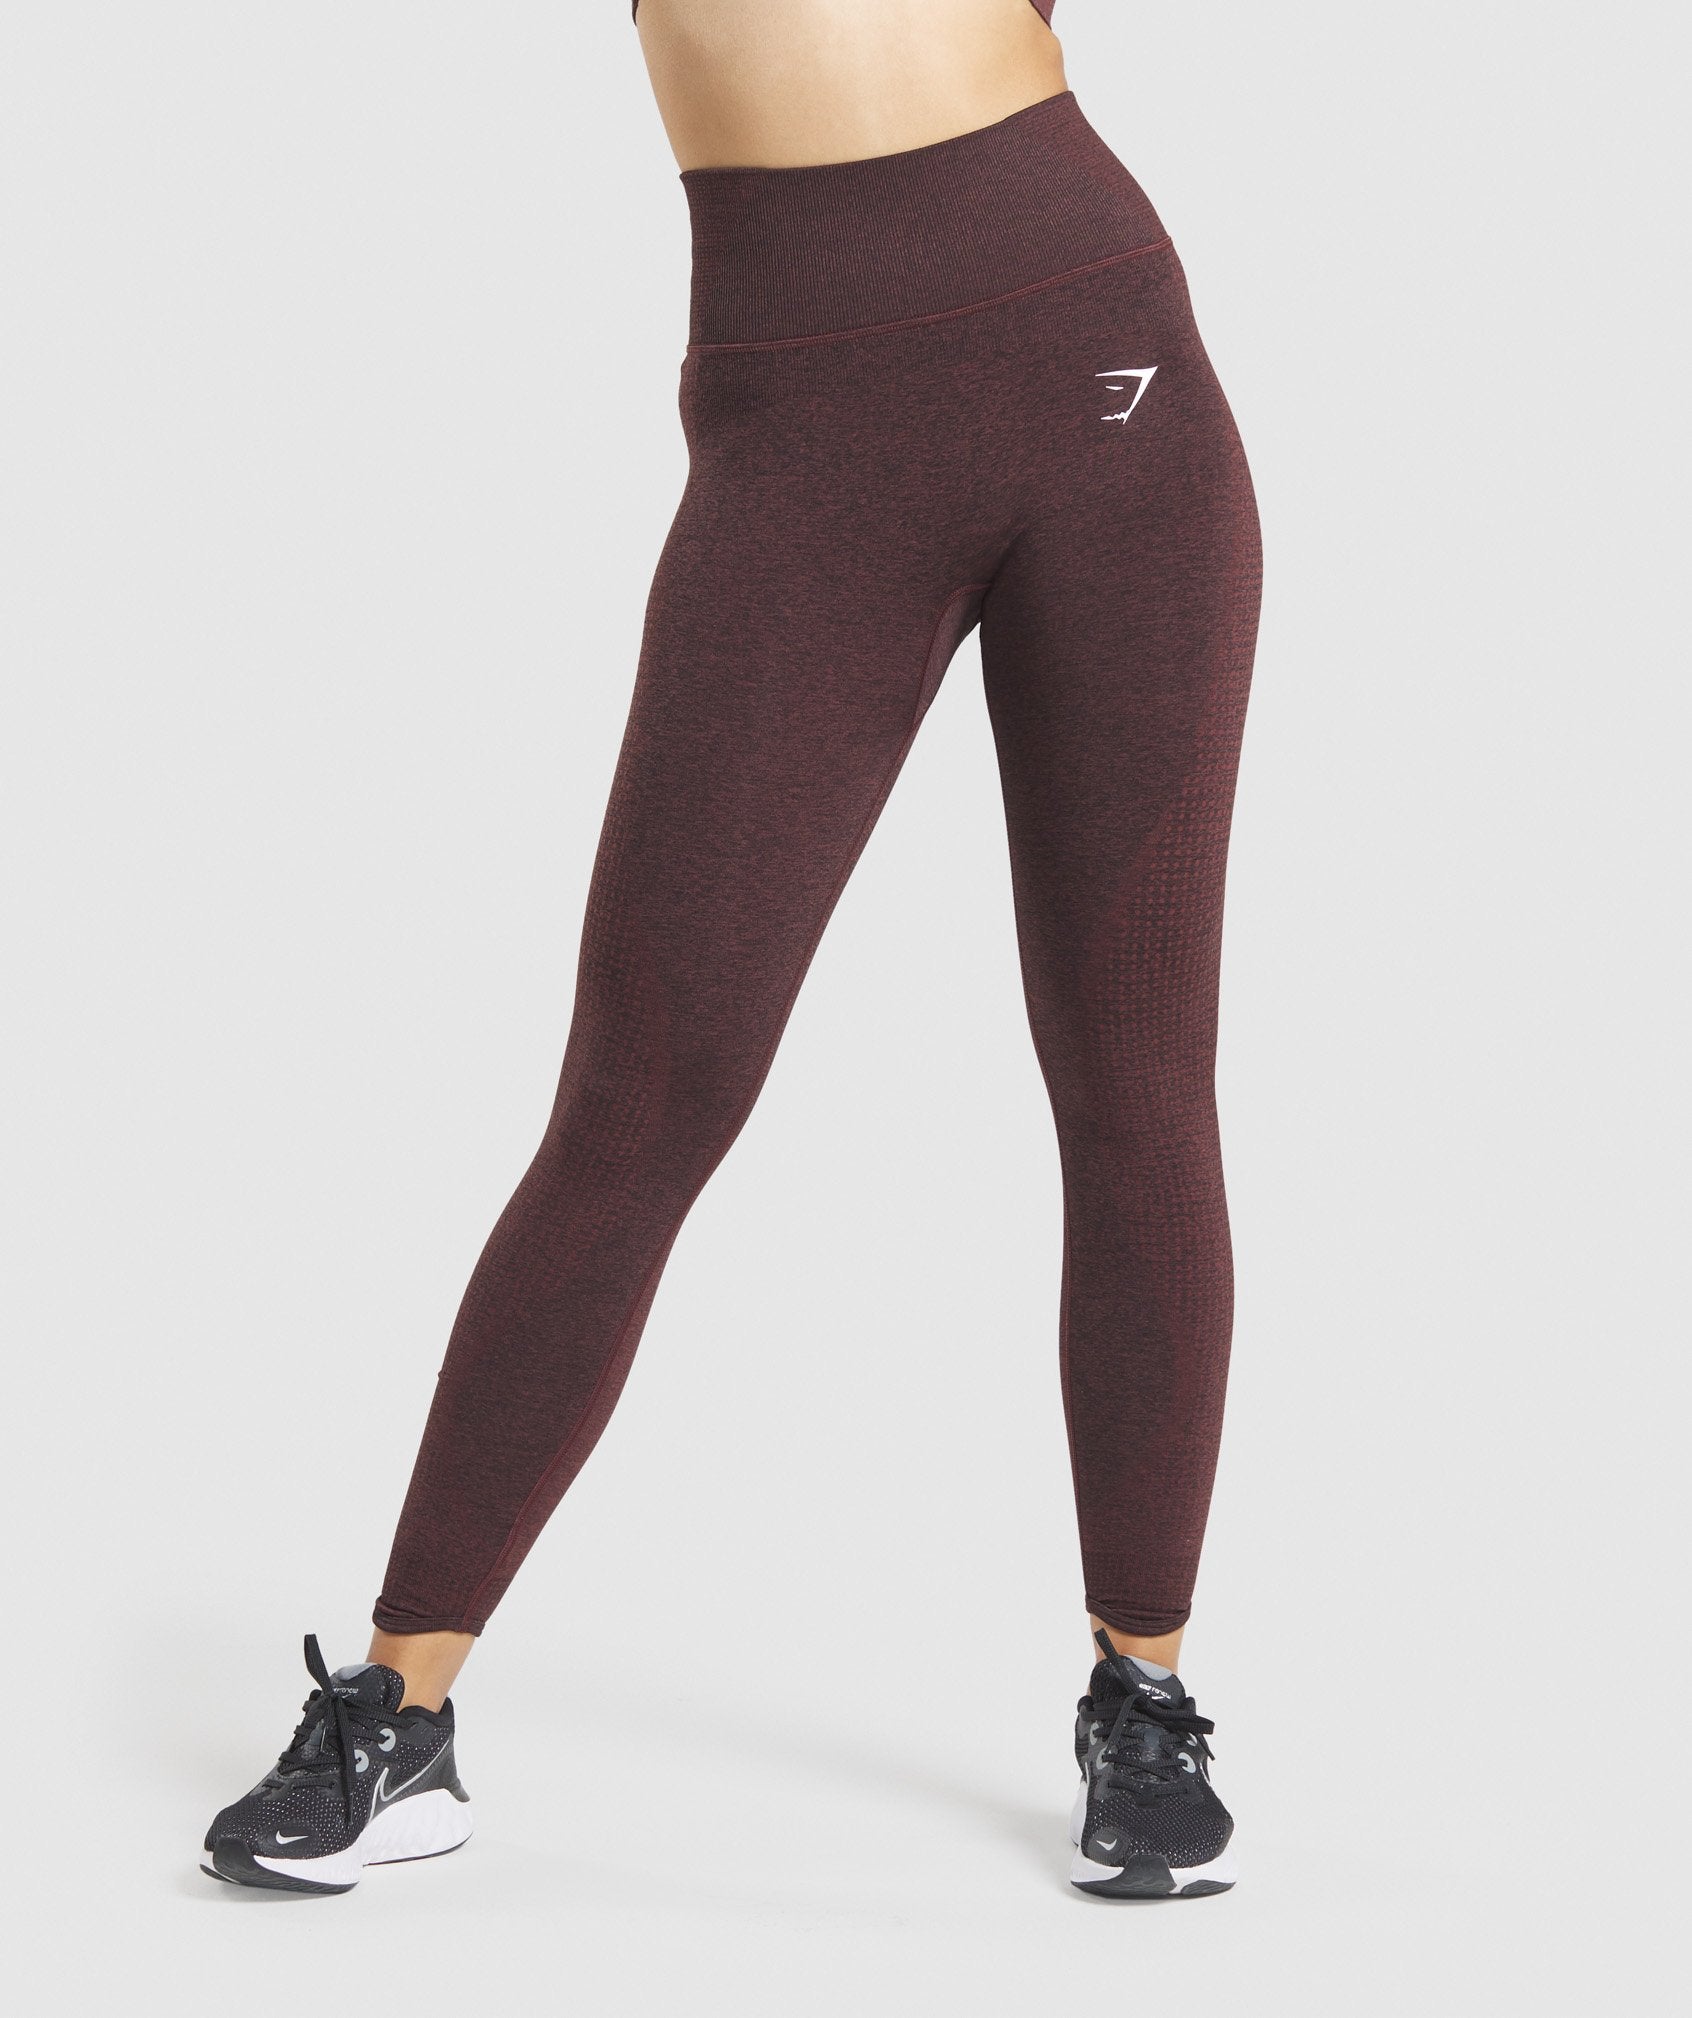 gymshark vital seamless 2.0 leggings in cherry brown - Depop